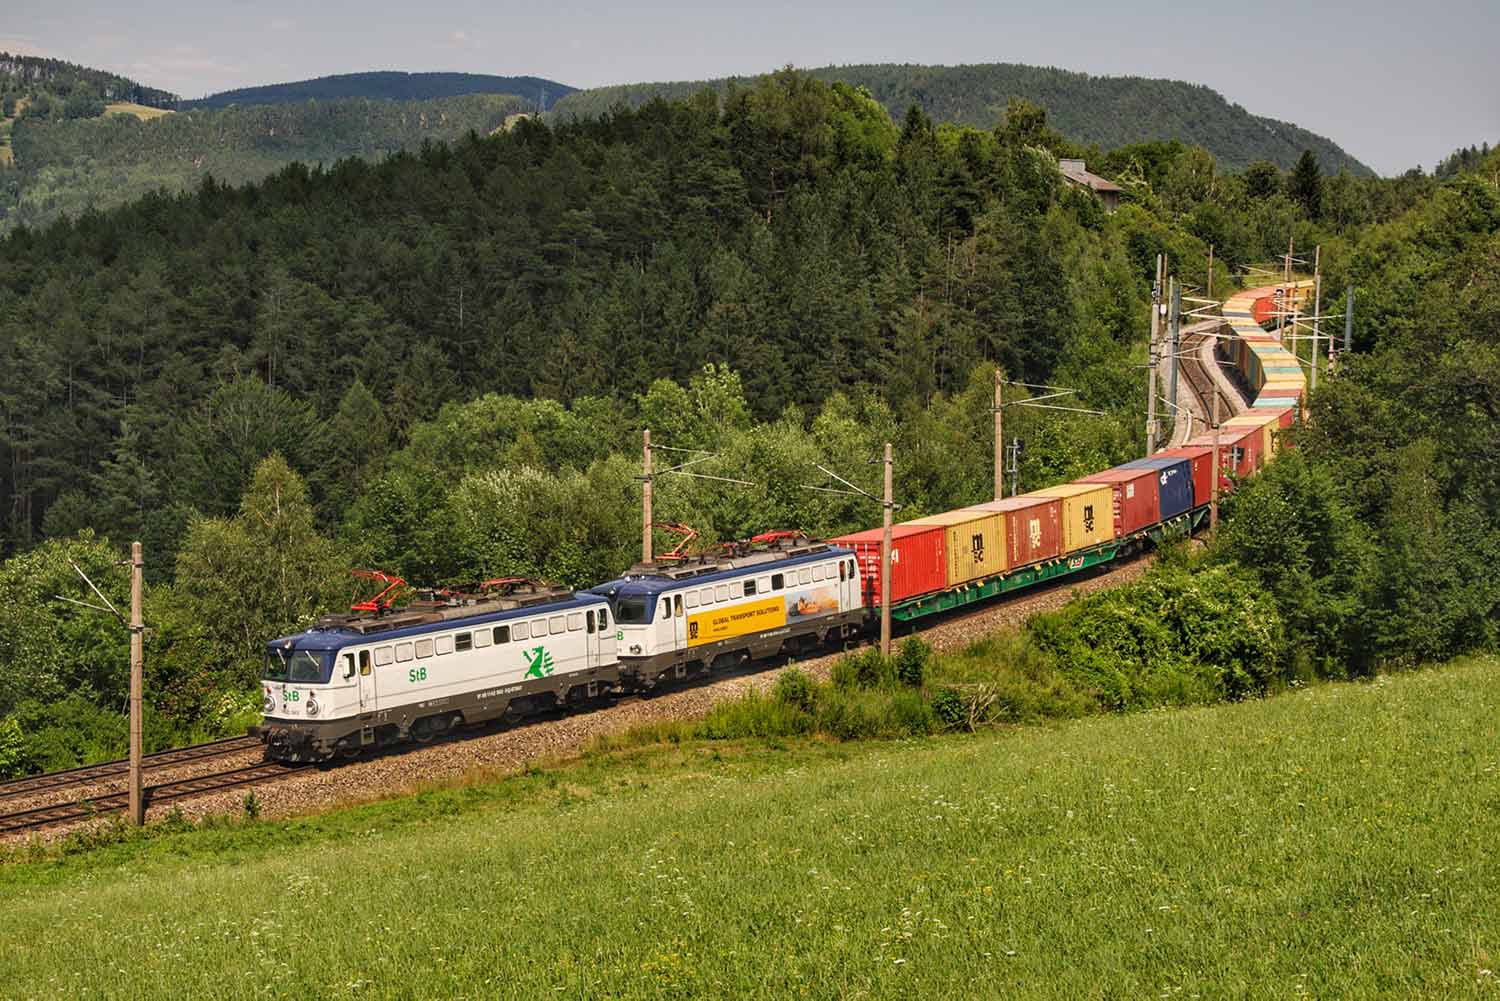 Steiermarkbahn Transport und Logistik GmbH